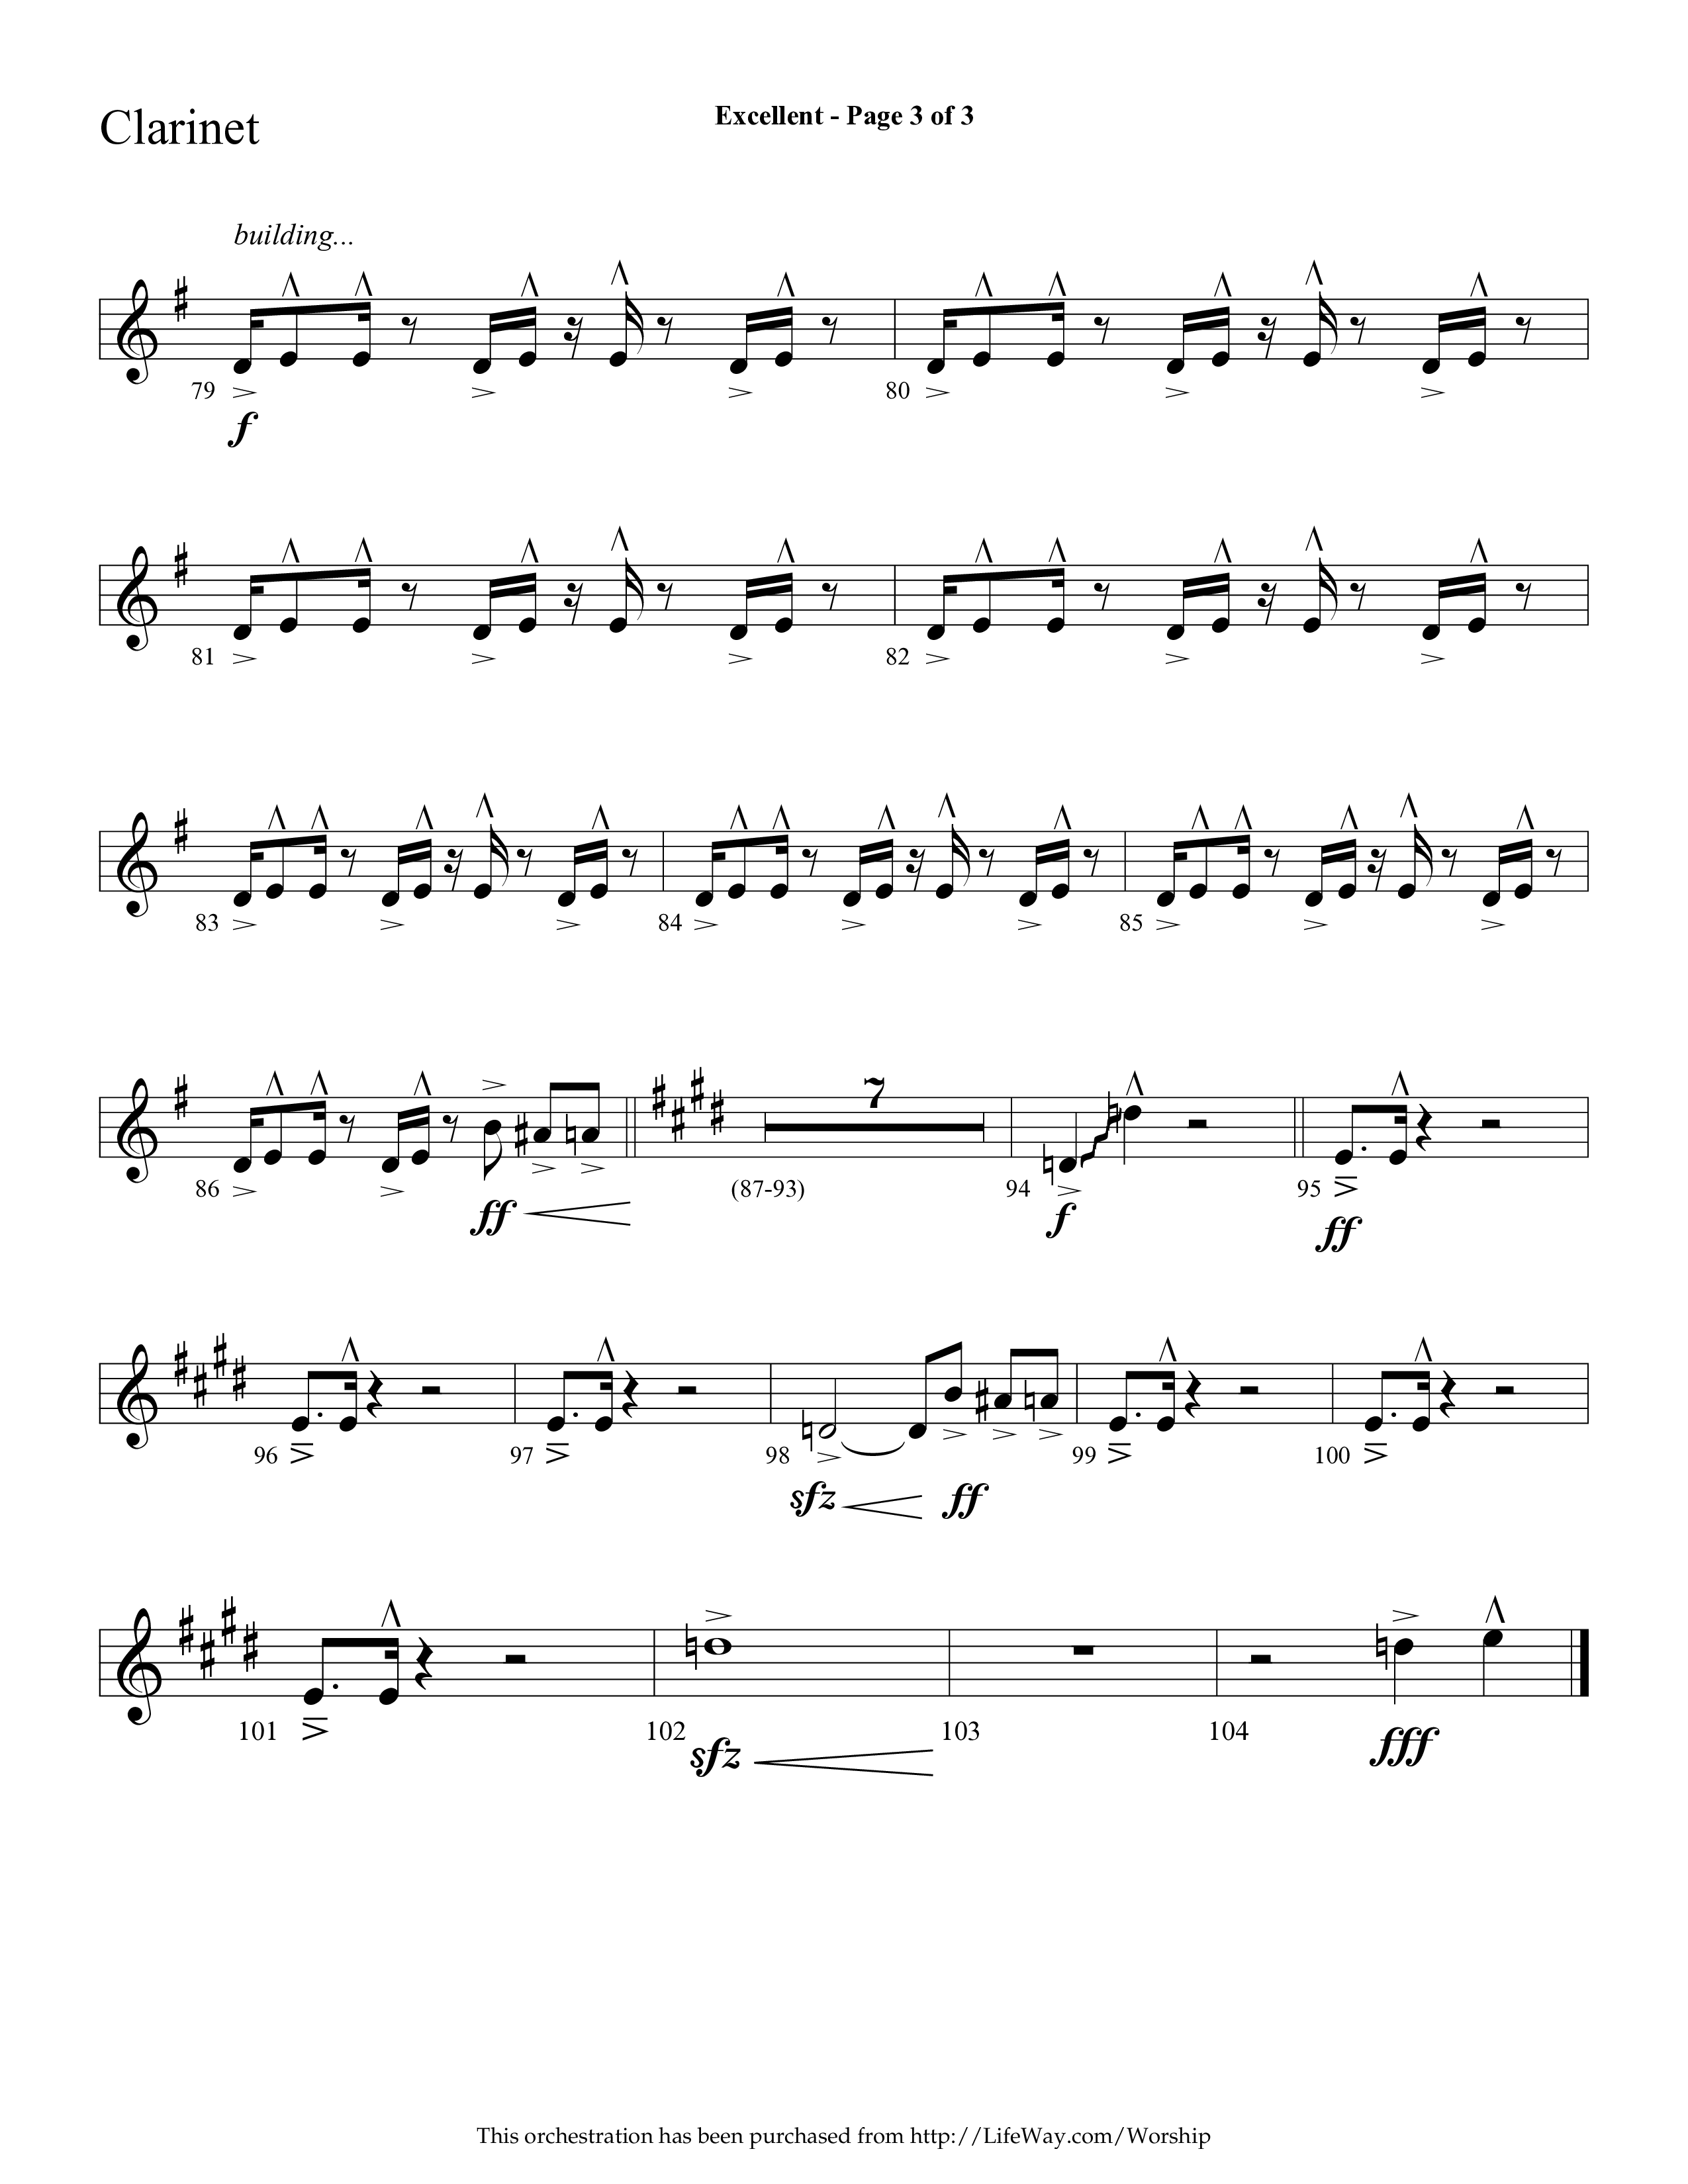 Excellent (Choral Anthem SATB) Clarinet 1/2 (Lifeway Choral / Arr. Cliff Duren)